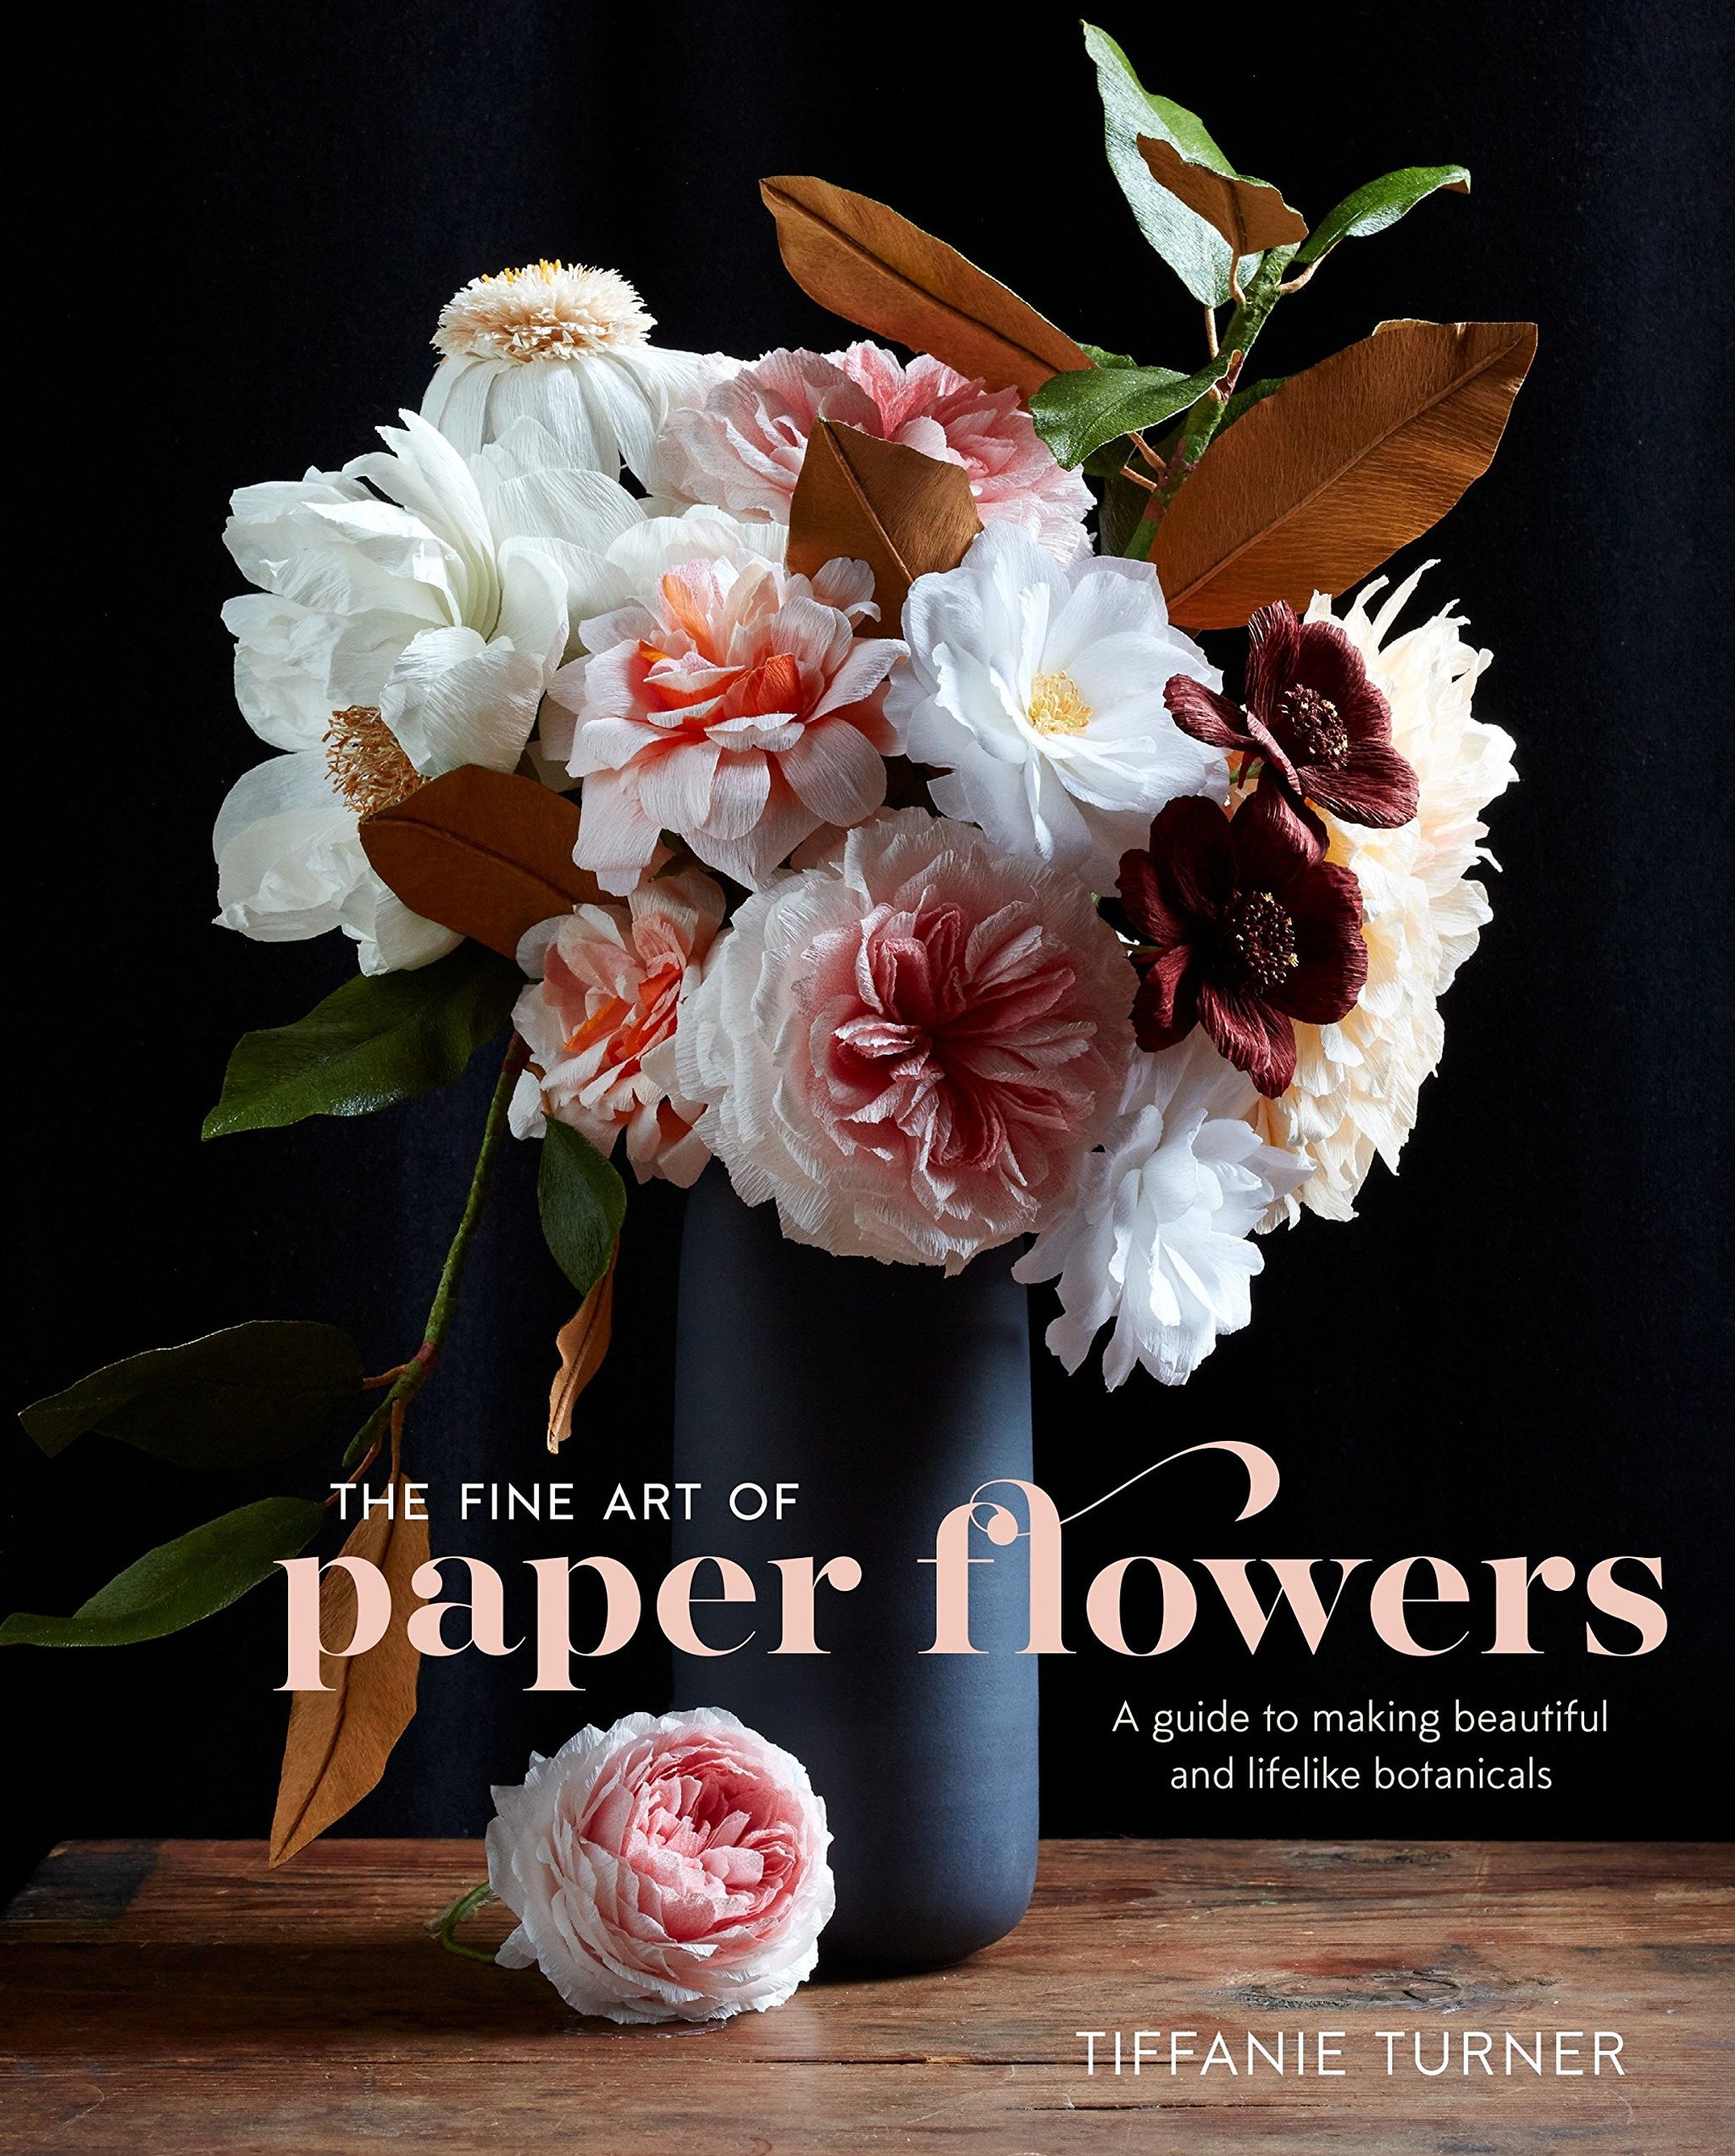 Libro The fine art of paper flowers de la artista Tiffanie Turner para aprender a crear tus propios ramos de flores de papel.